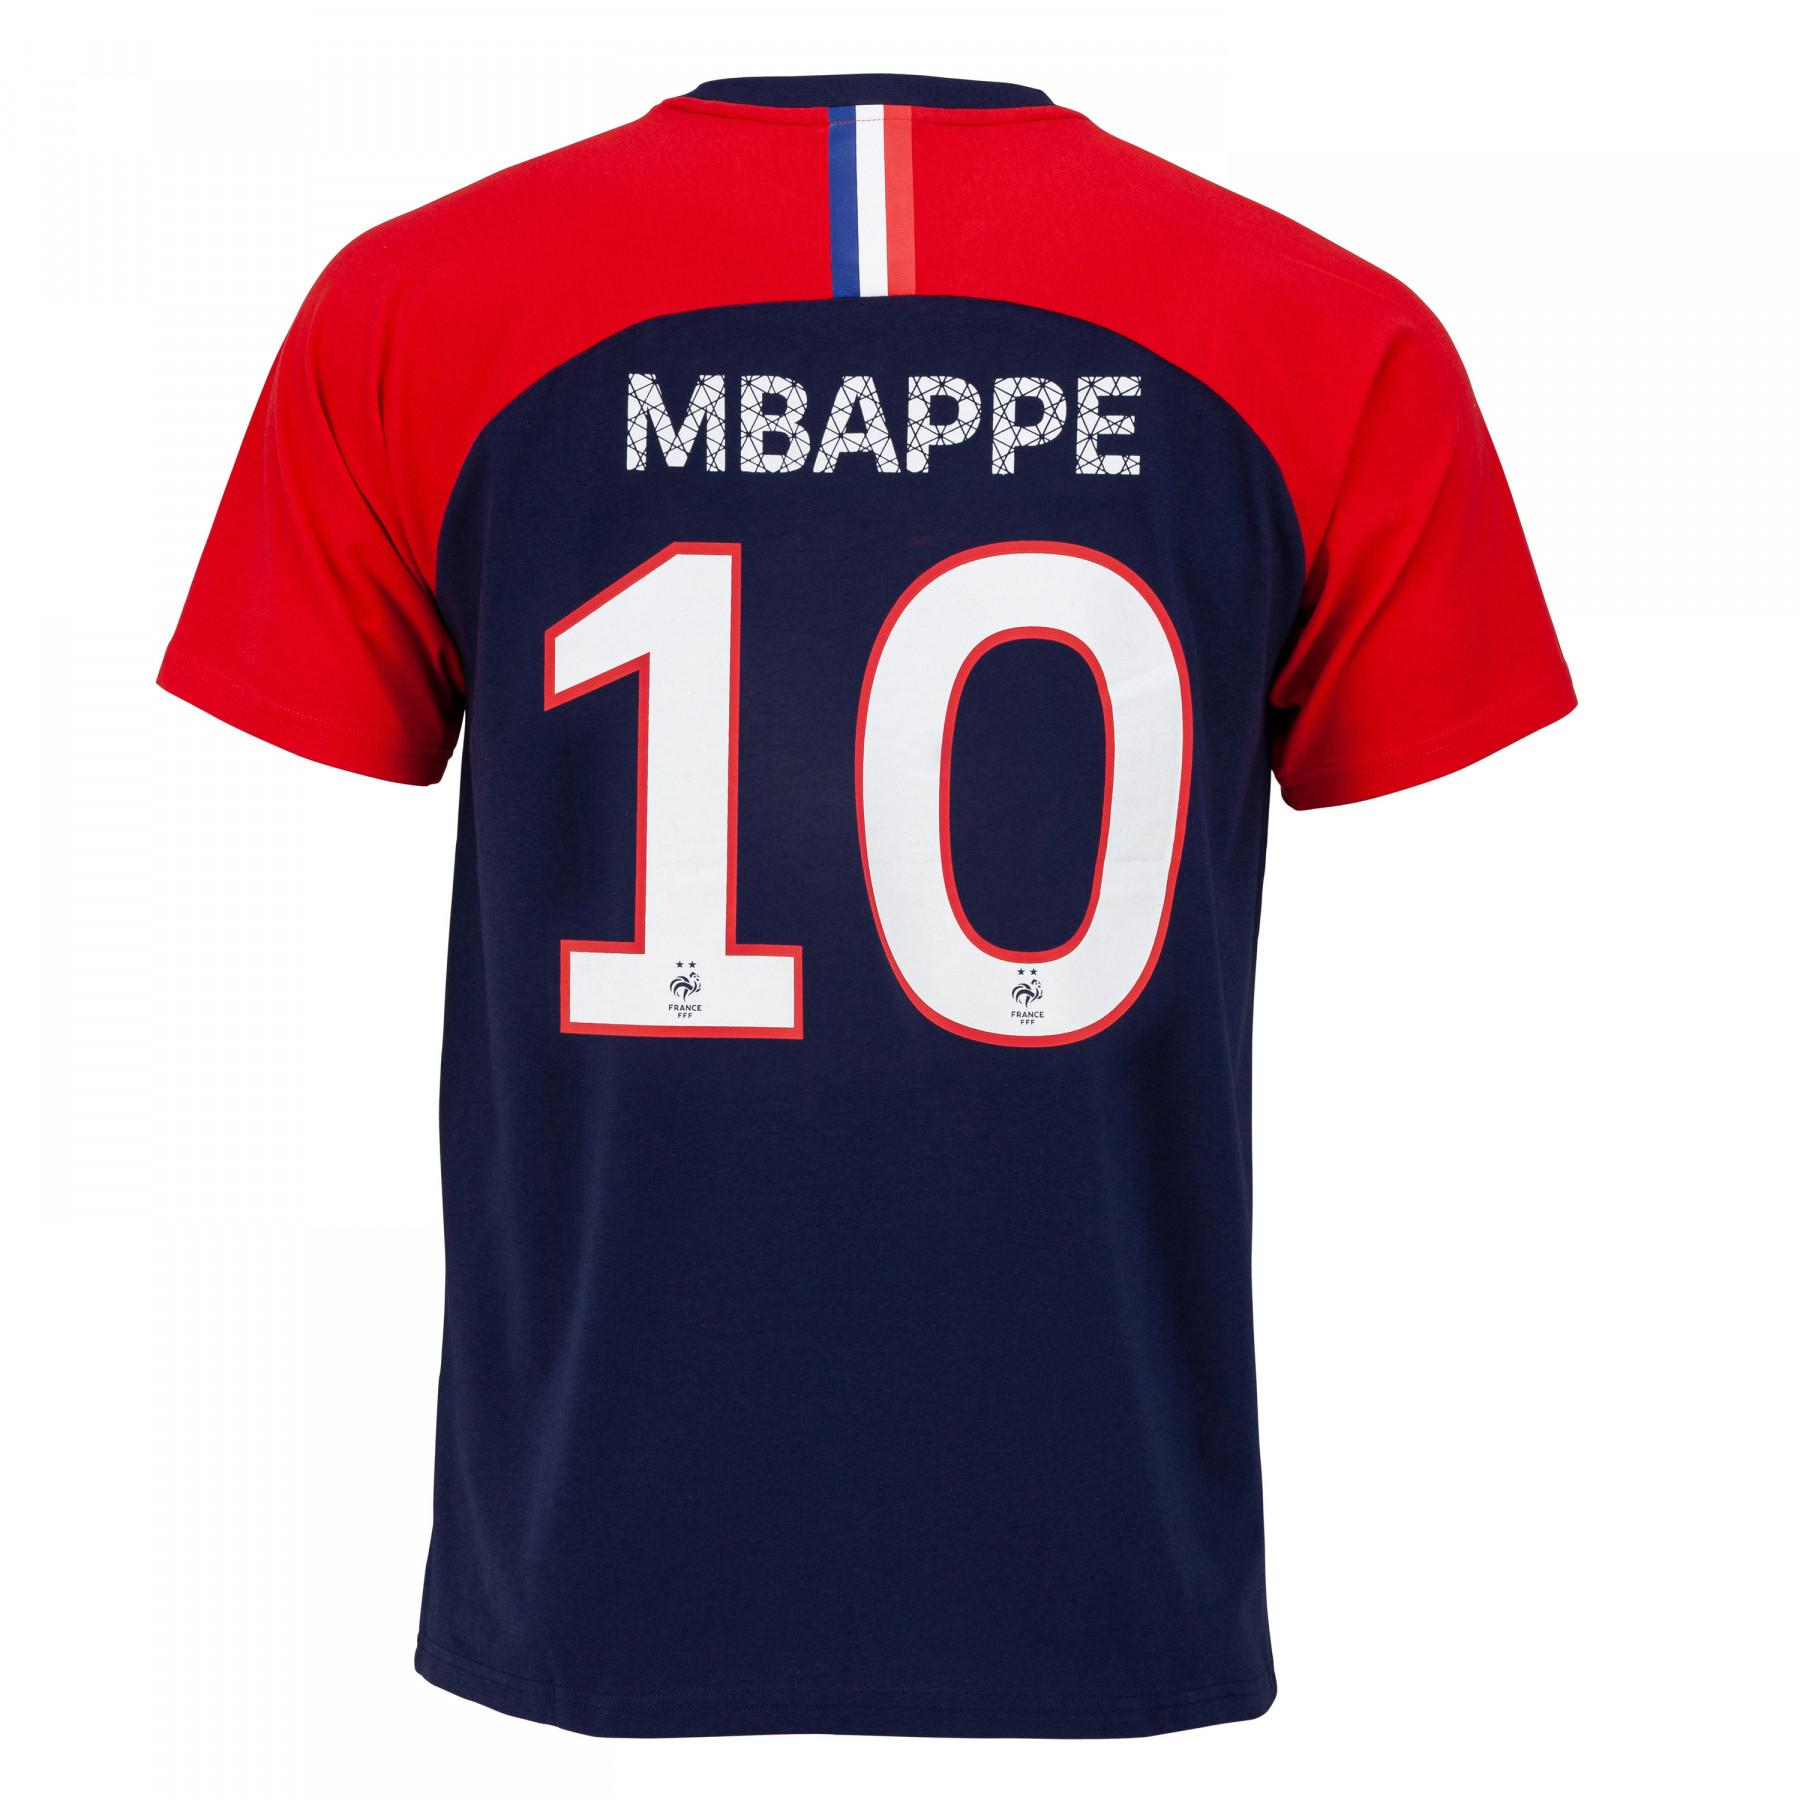 Camiseta niño fff jugador mbappé n°10